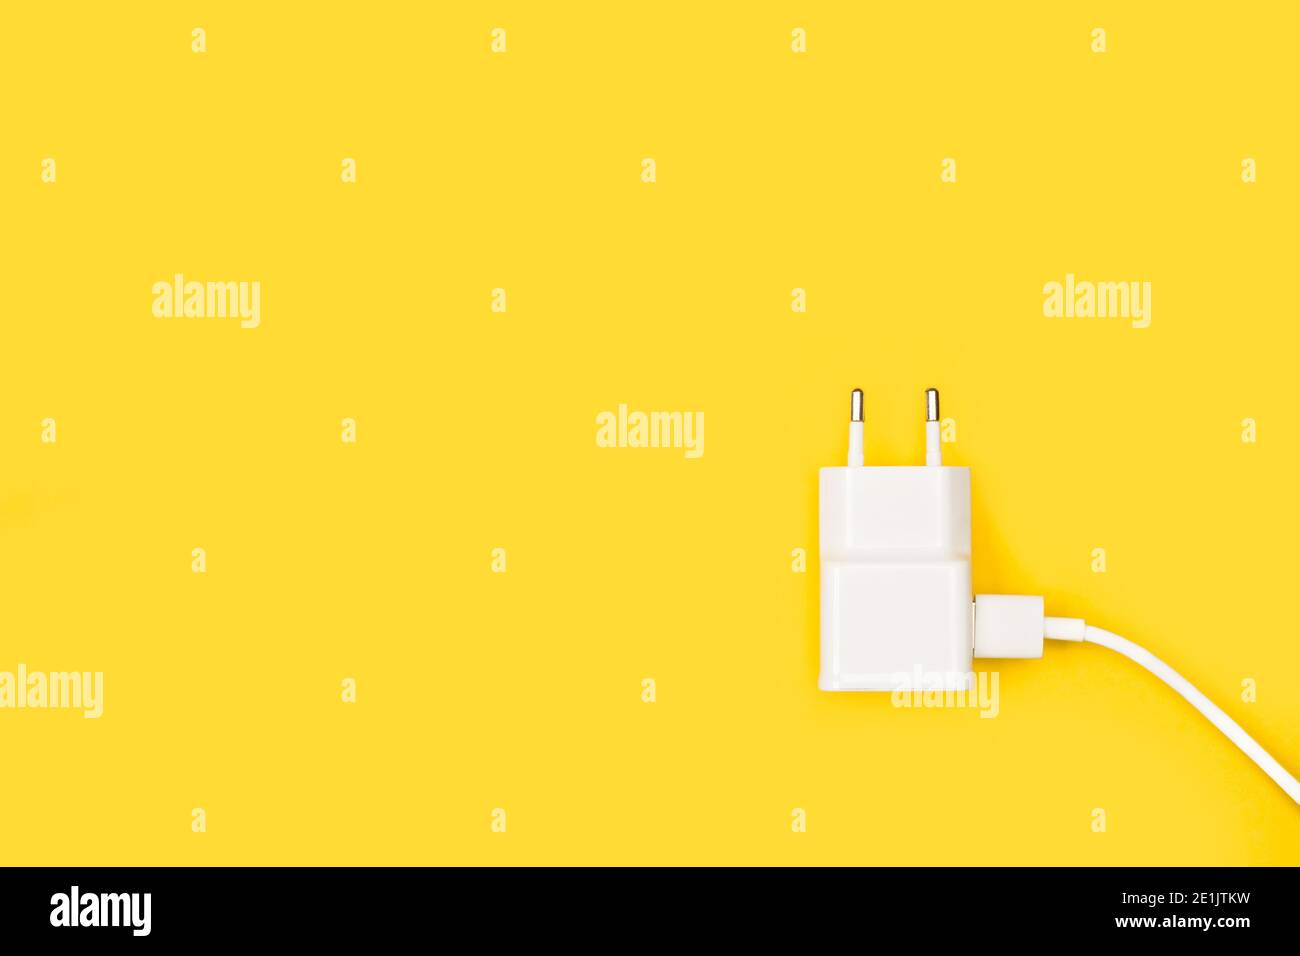 Ein Smartphone-Ladegerät mit Kabel auf gelbem Hintergrund Stockfotografie -  Alamy